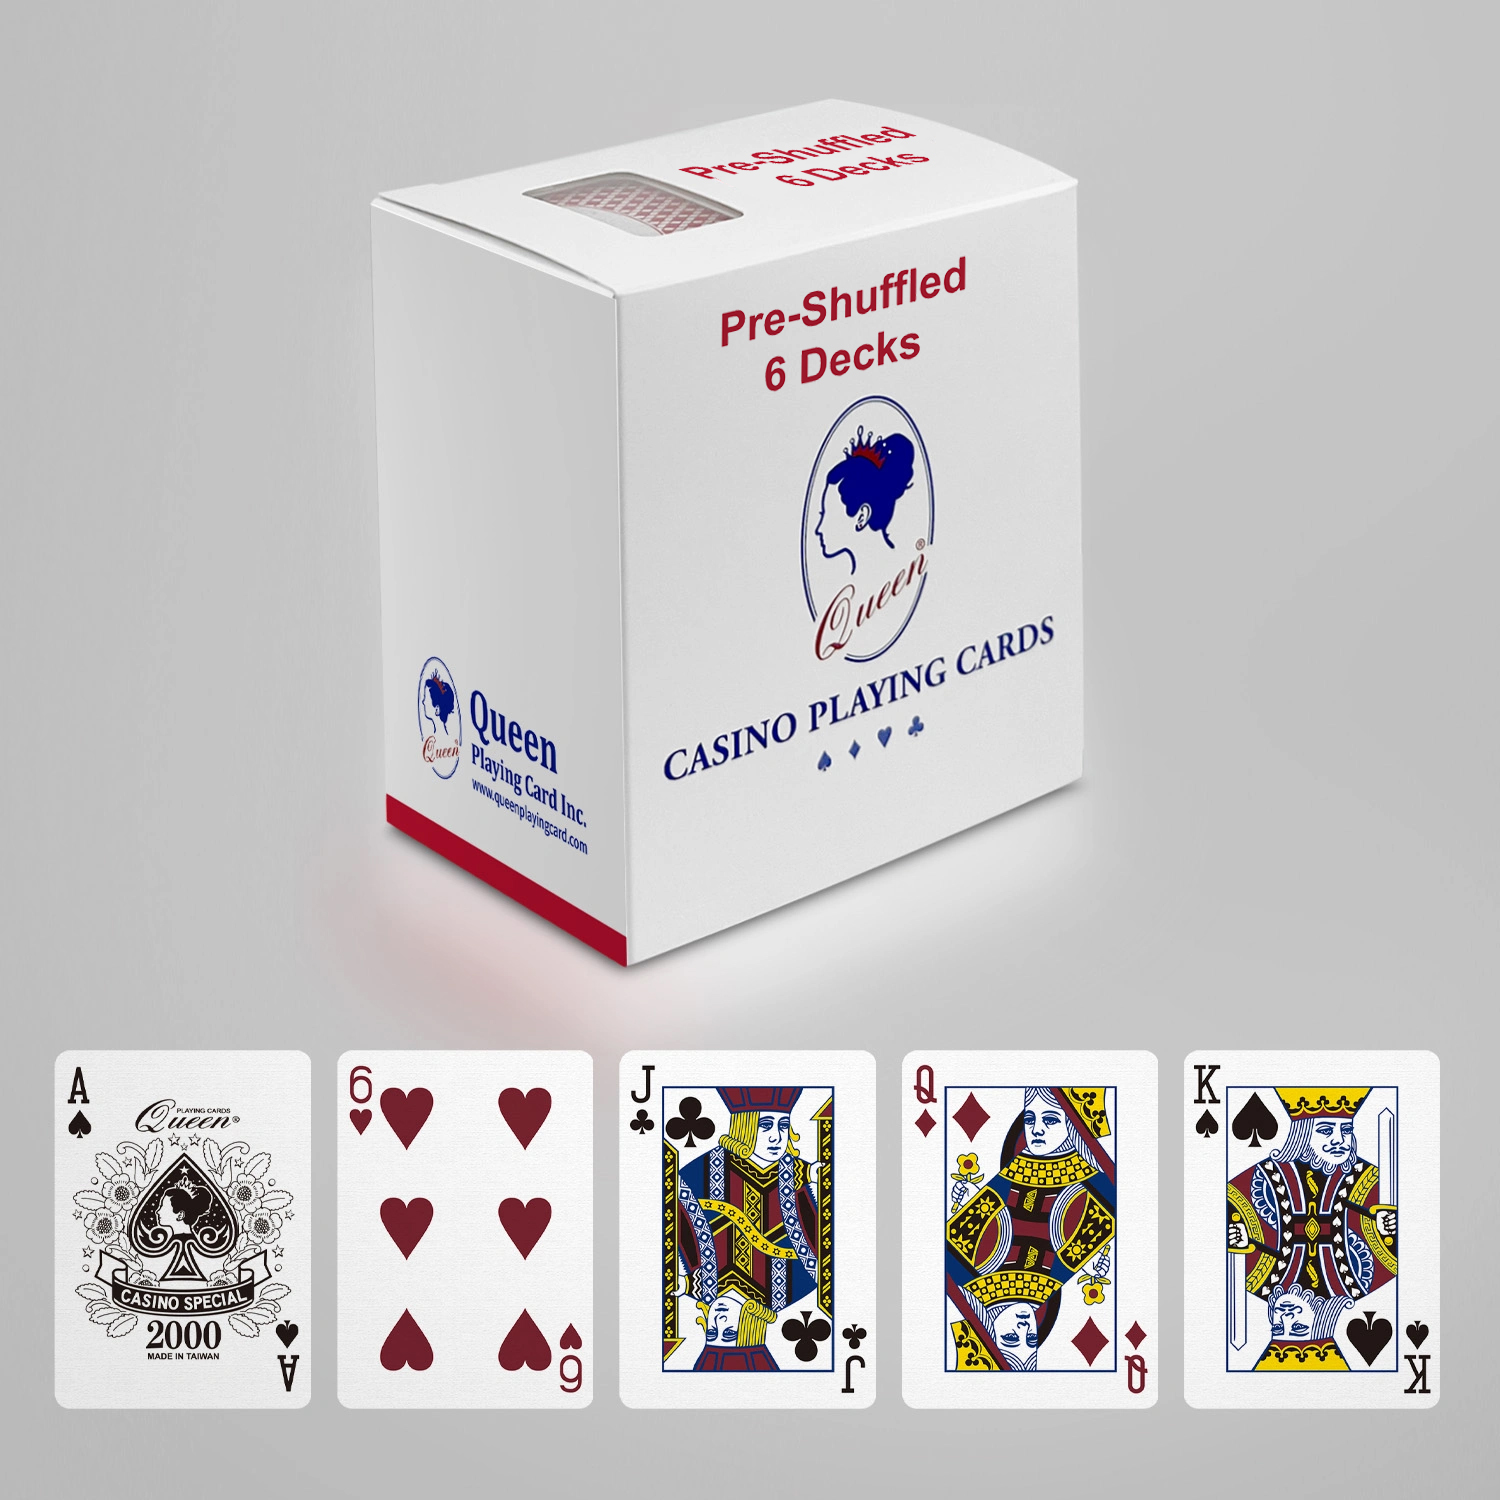 Professionelle Kartenspielkarten aus Papier, Pokergröße – Standard-Index – 6 Decks, vorgemischt erhältlich